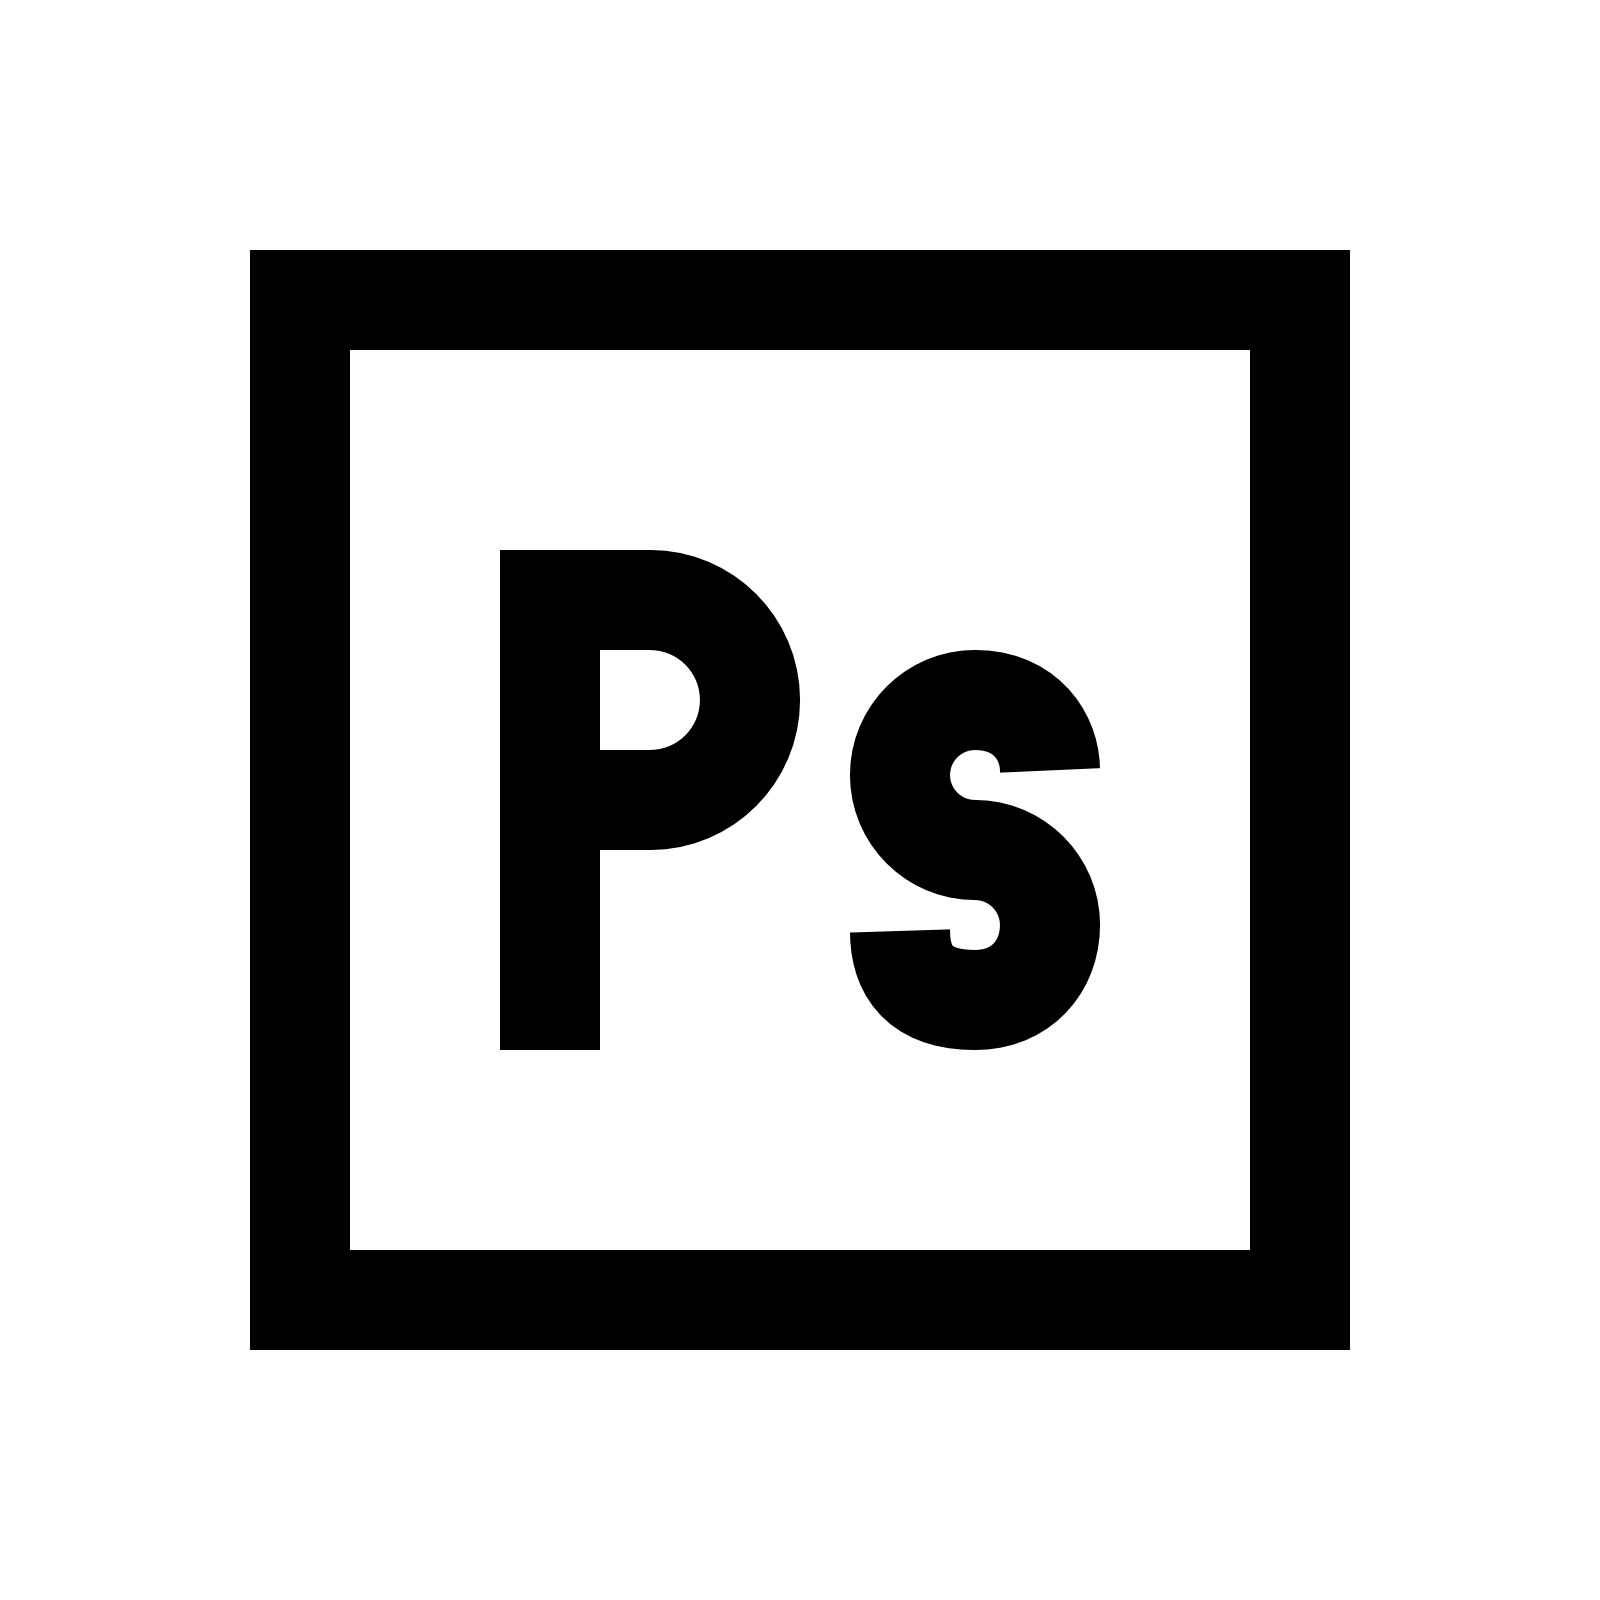 adobe photoshop logo vector